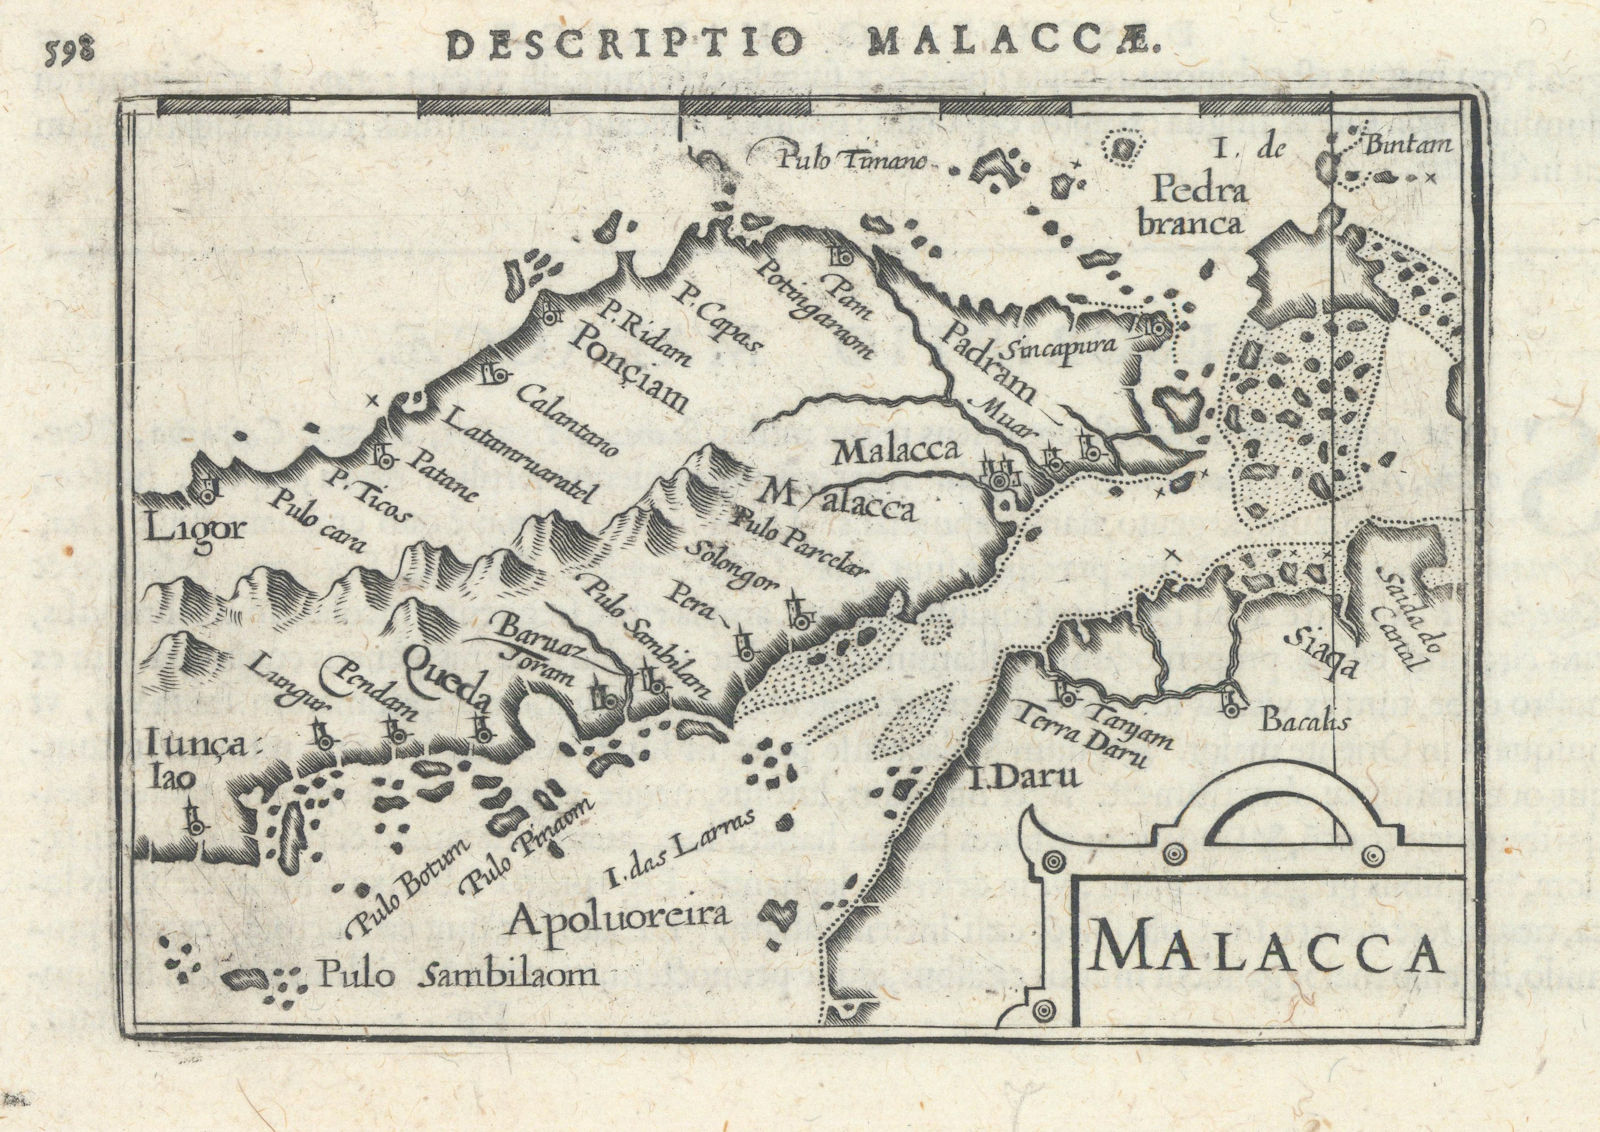 Malacca by Bertius/Langenes. Malay Peninsula, Singapore, Malacca Strait 1603 map